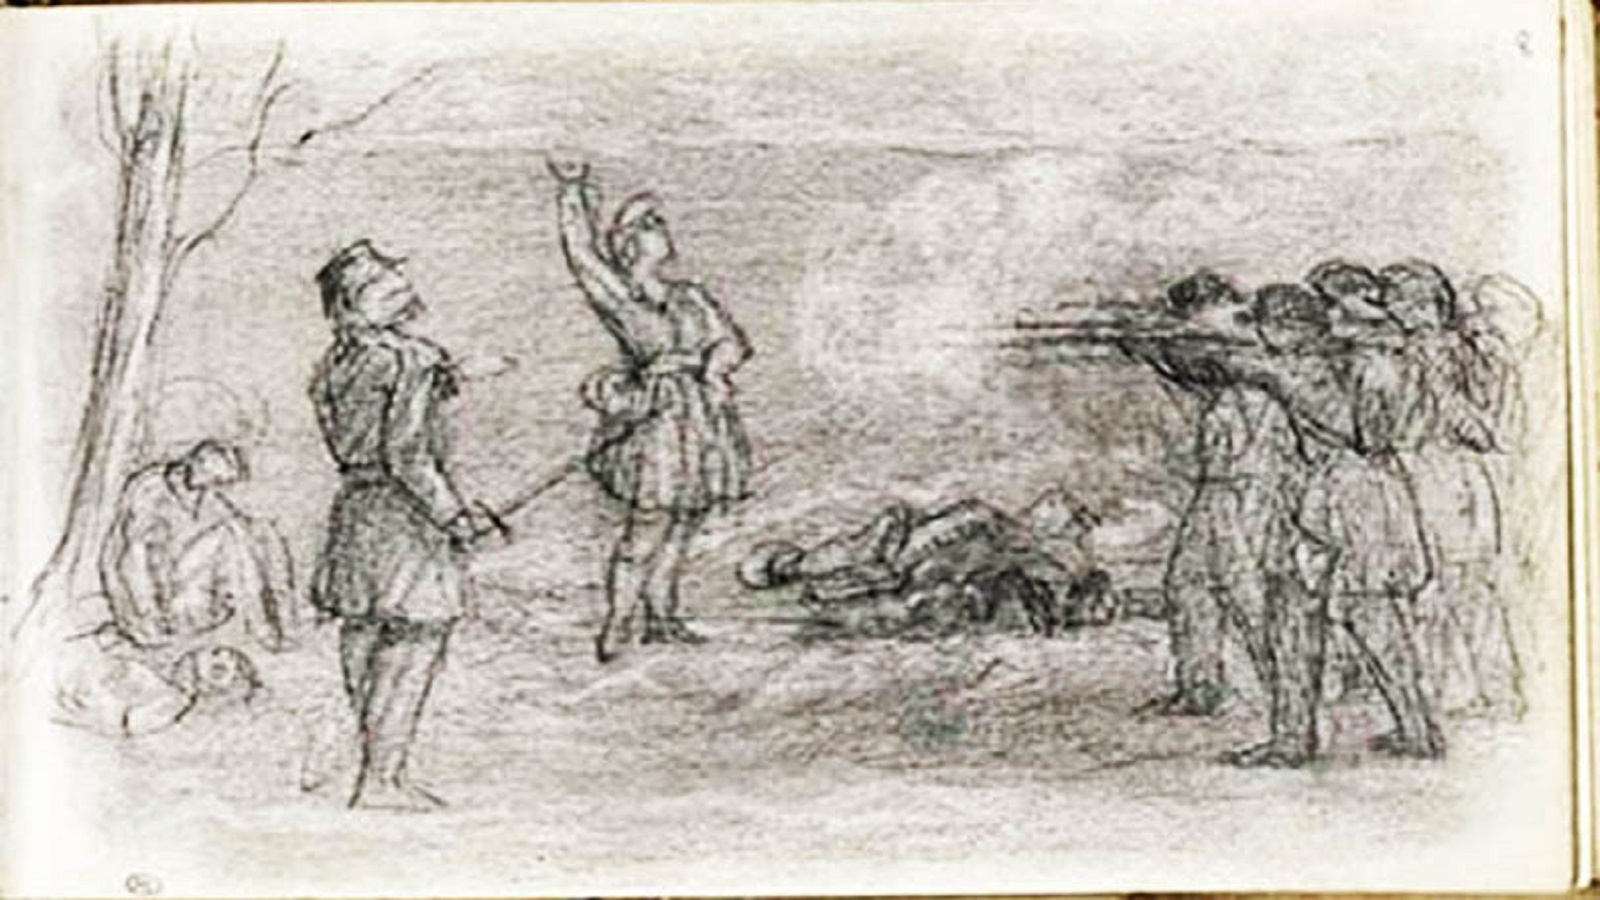  غوستاف كوربي، مشهد الإعدام رميا بالرصاص، 1871.